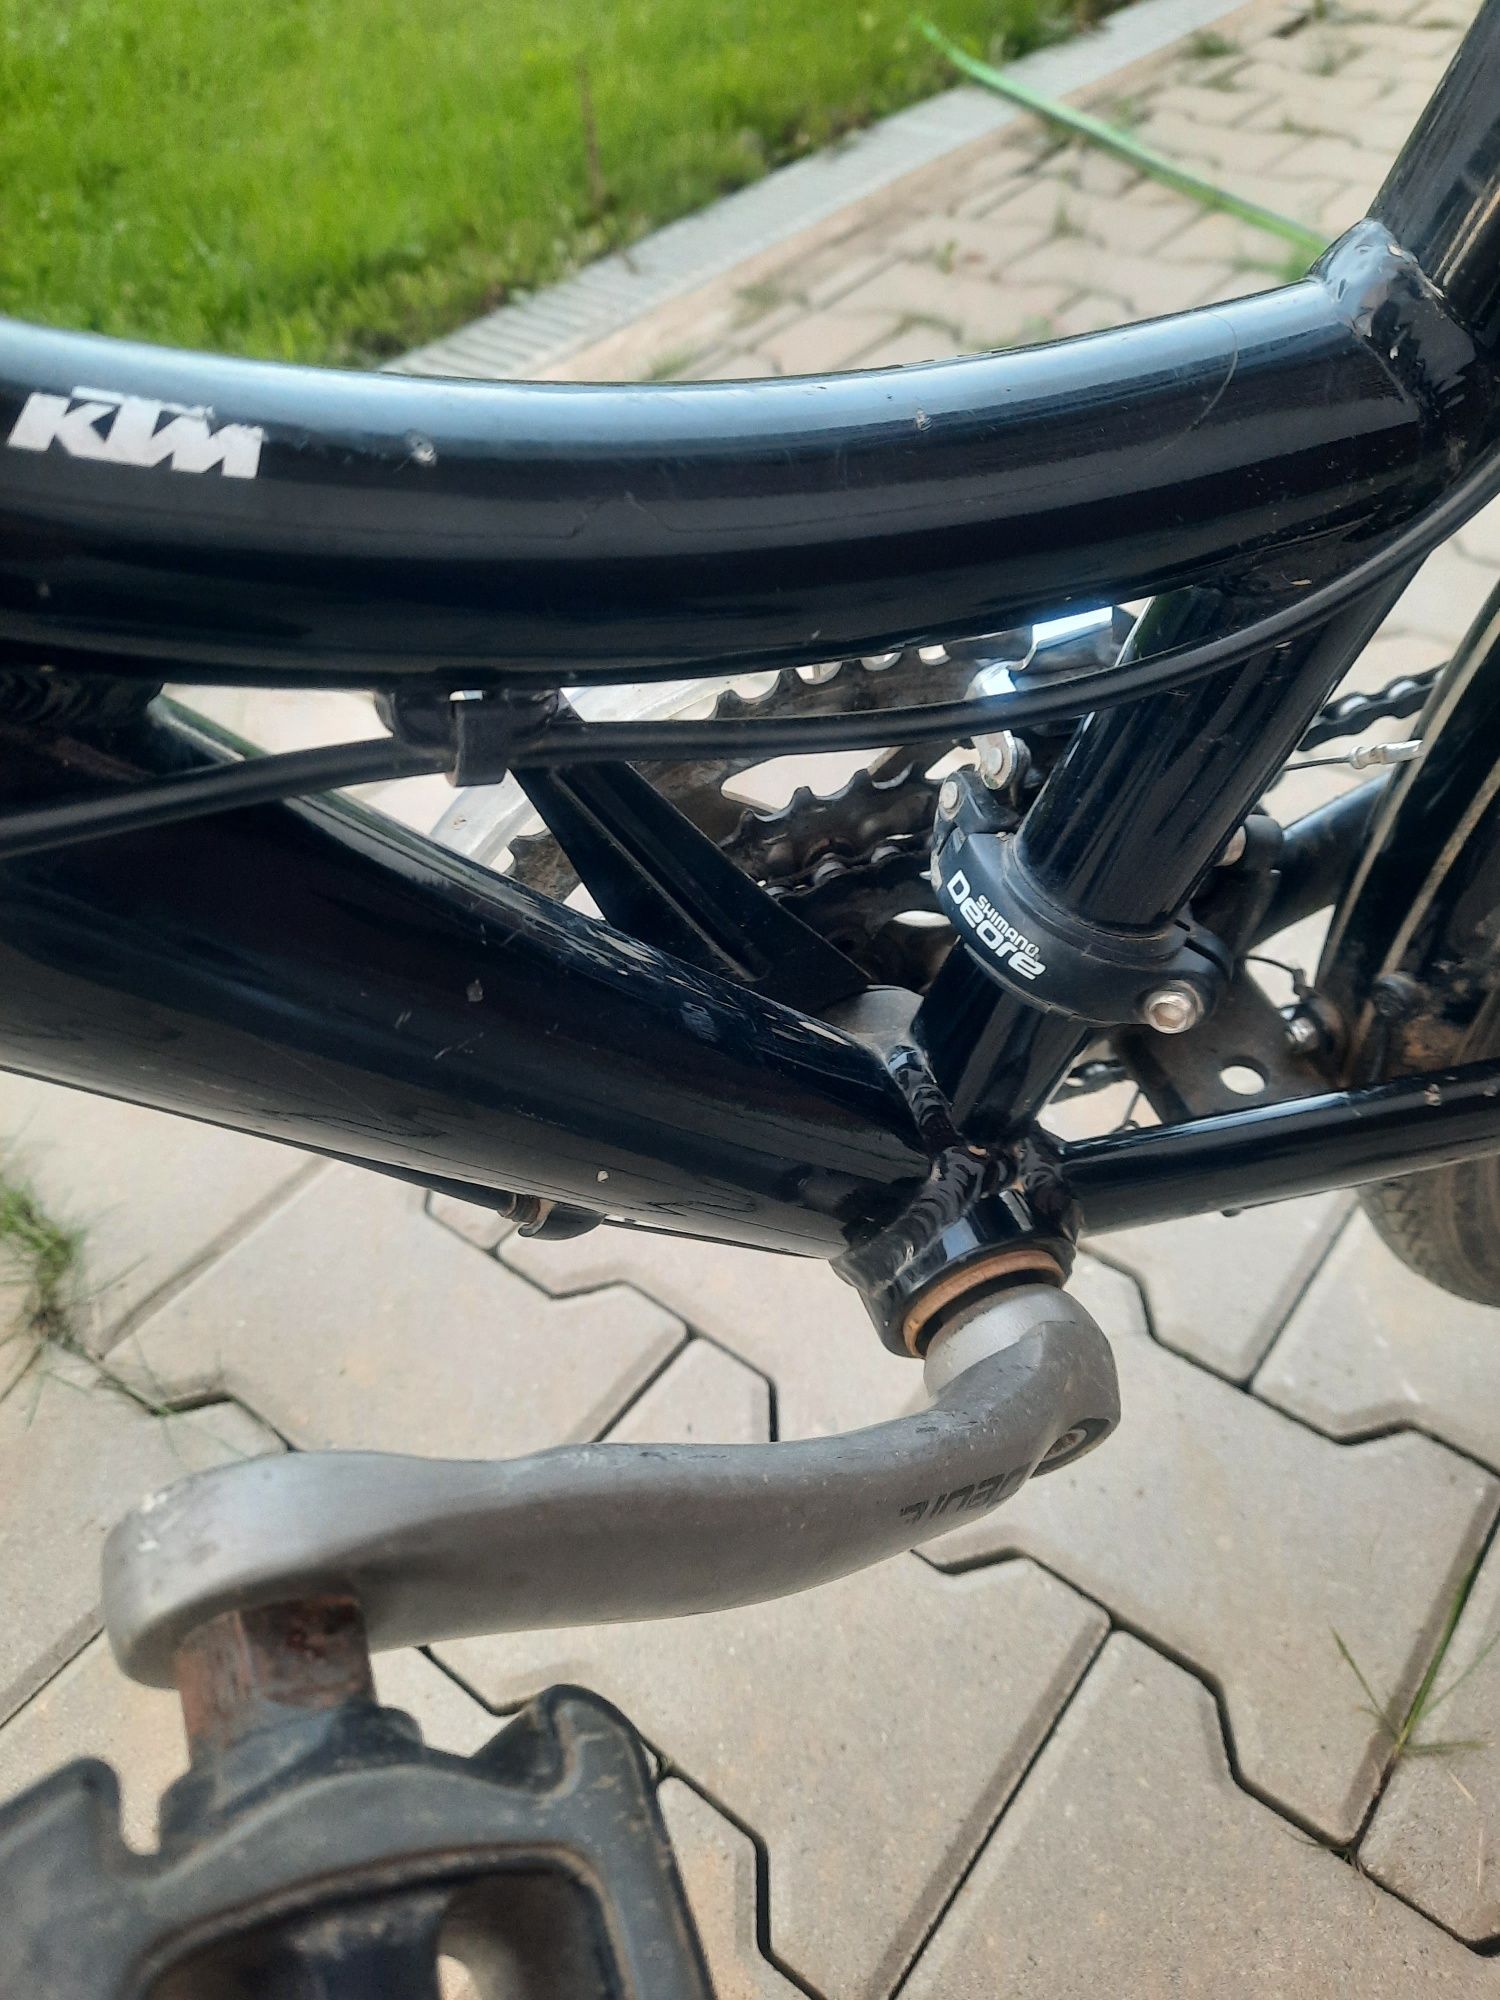 Vand bicicleta KTM